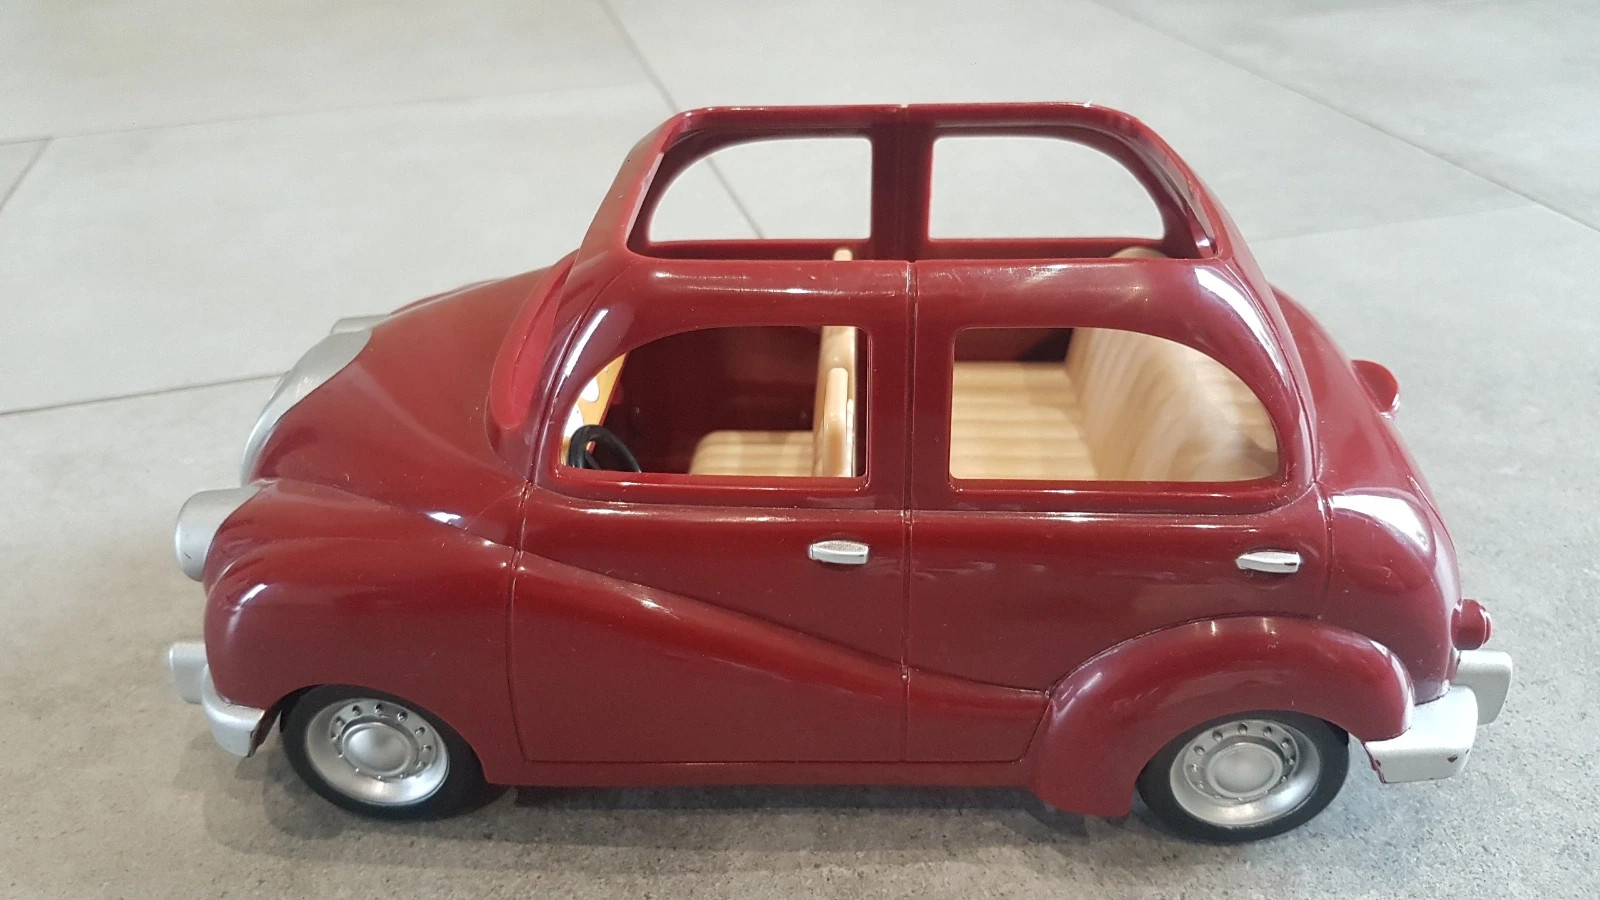 La voiture rouge Sylvanian Families - Acheter sur la Boutique Officielle  5448